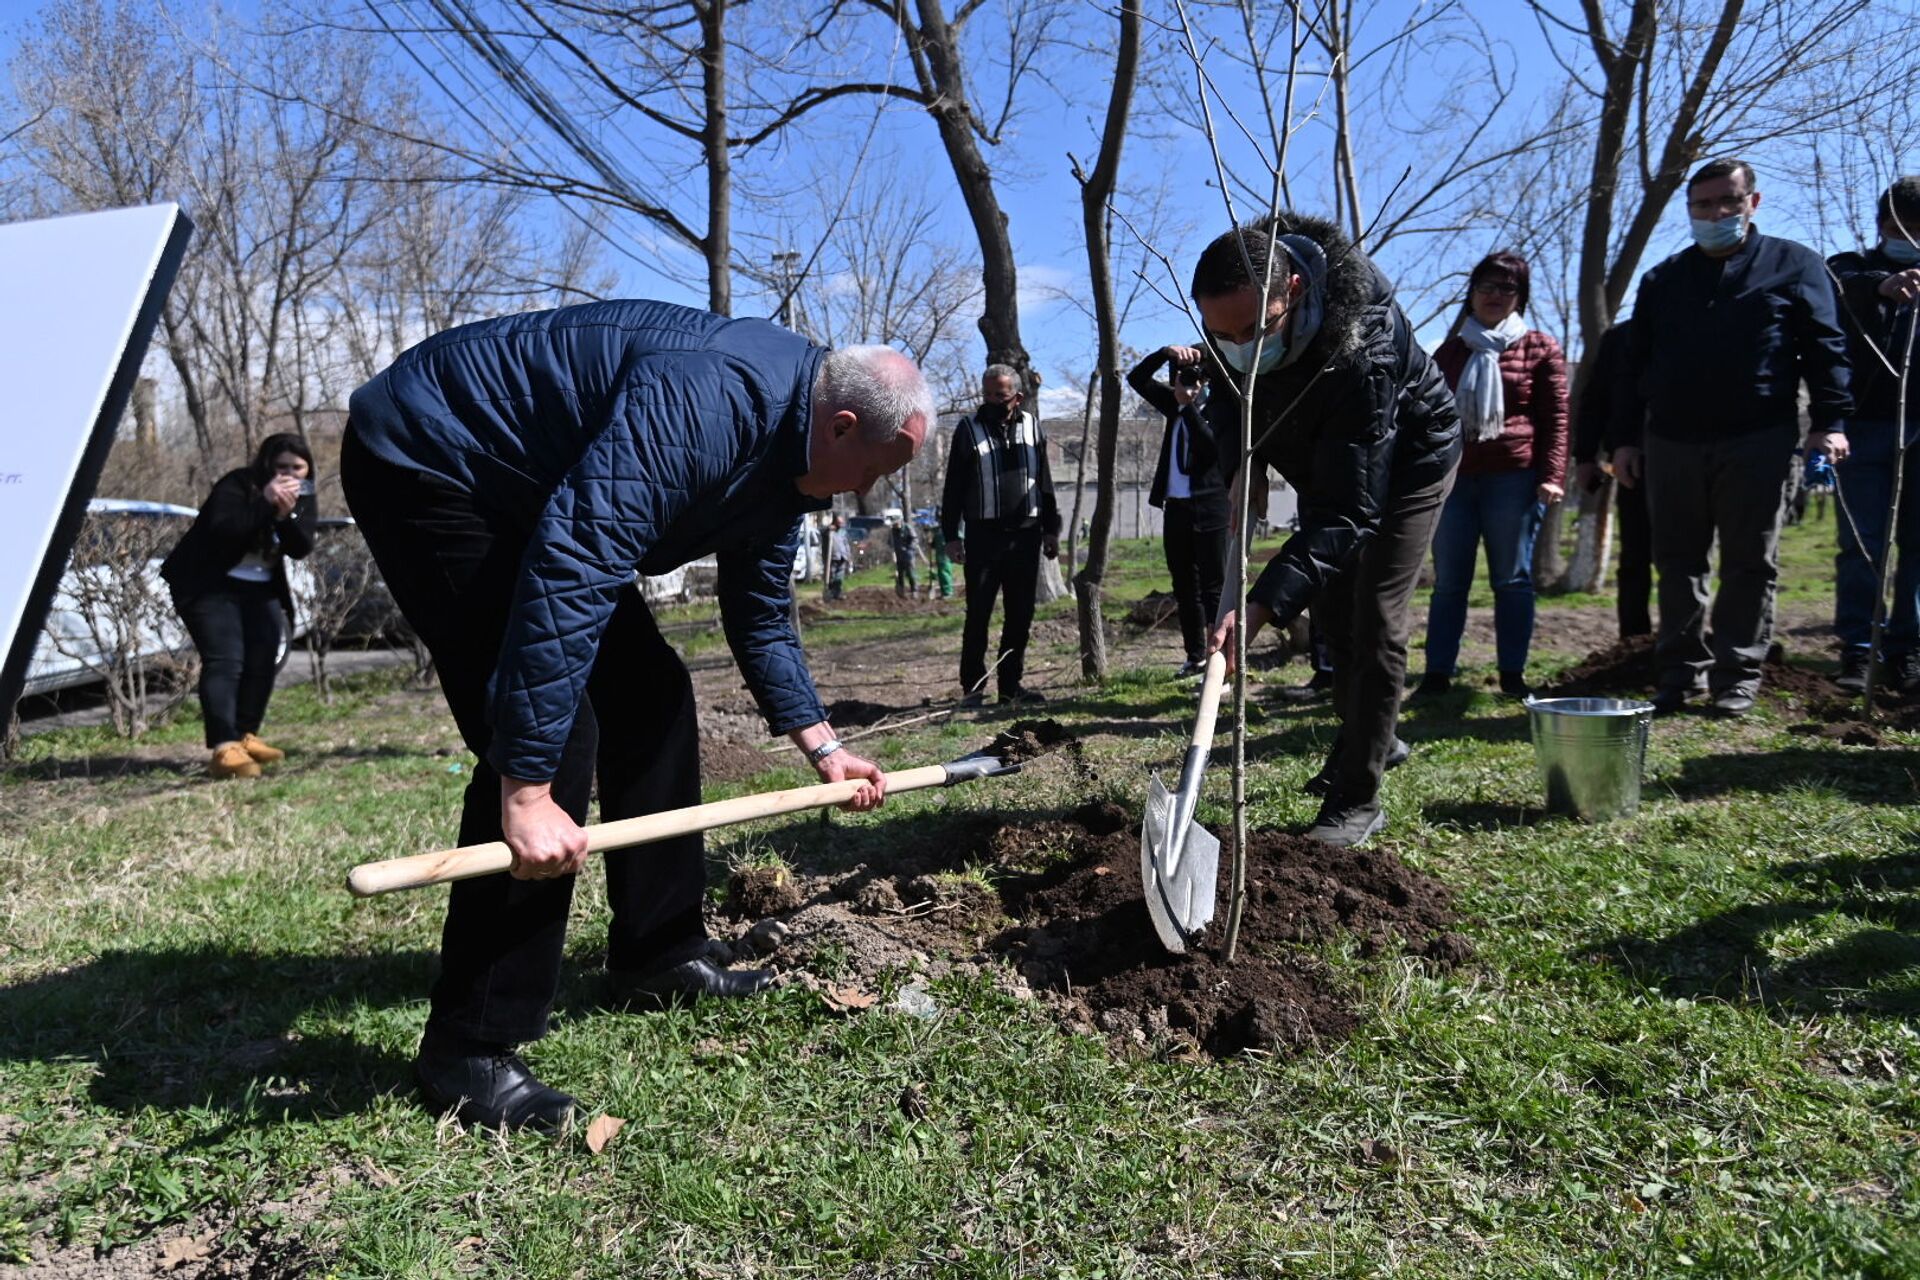 100 ծառ ՝ ի հիշատակ Հայրենական պատերազմի զոհերի. Երևանը միացավ «Հիշատակի այգի» ակցիային - Sputnik Արմենիա, 1920, 03.04.2021